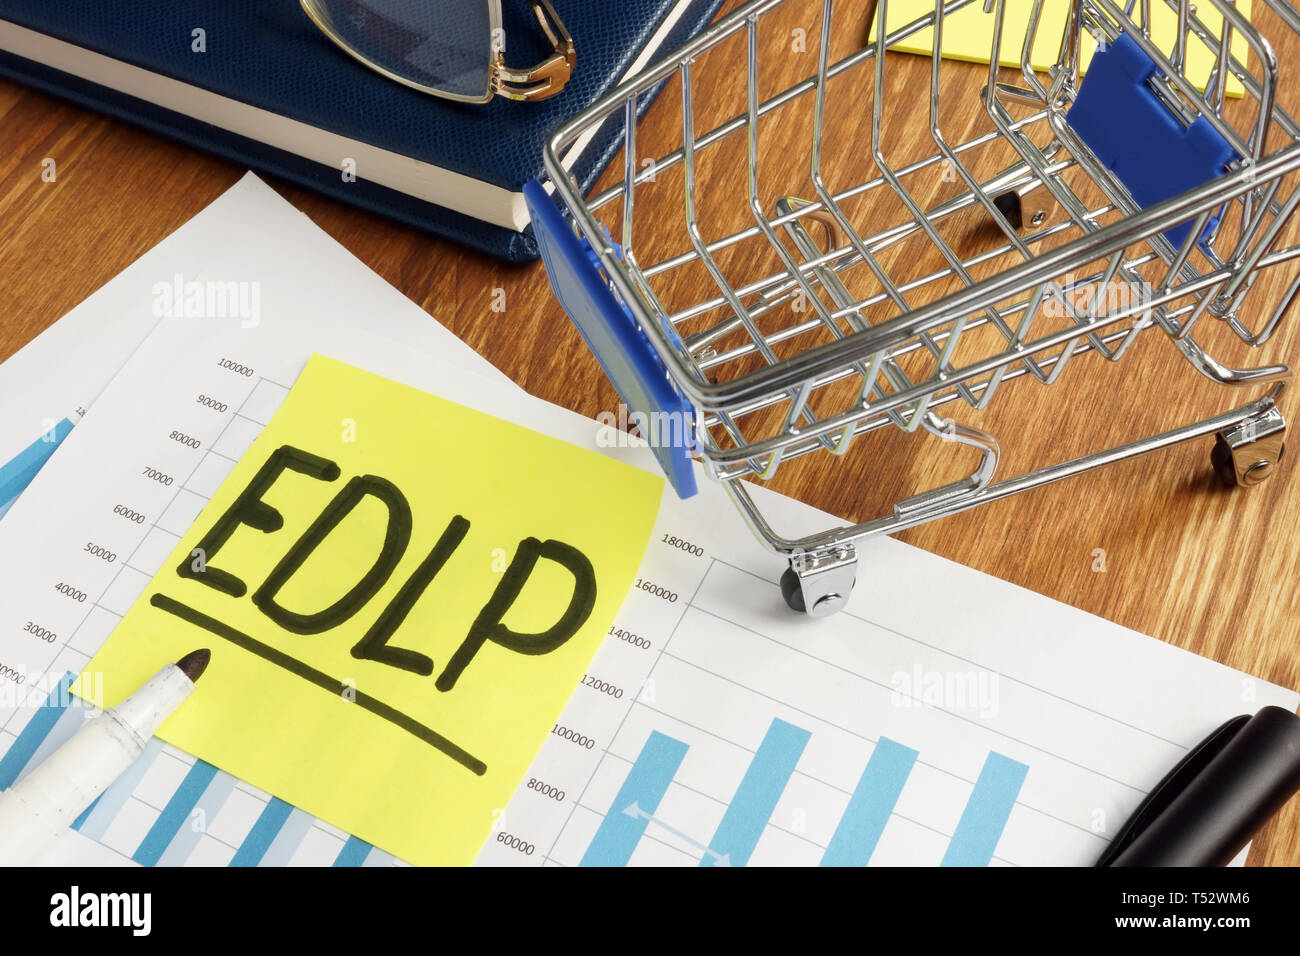 EDLP precios bajos todos los días informe de marketing empresarial. Foto de stock